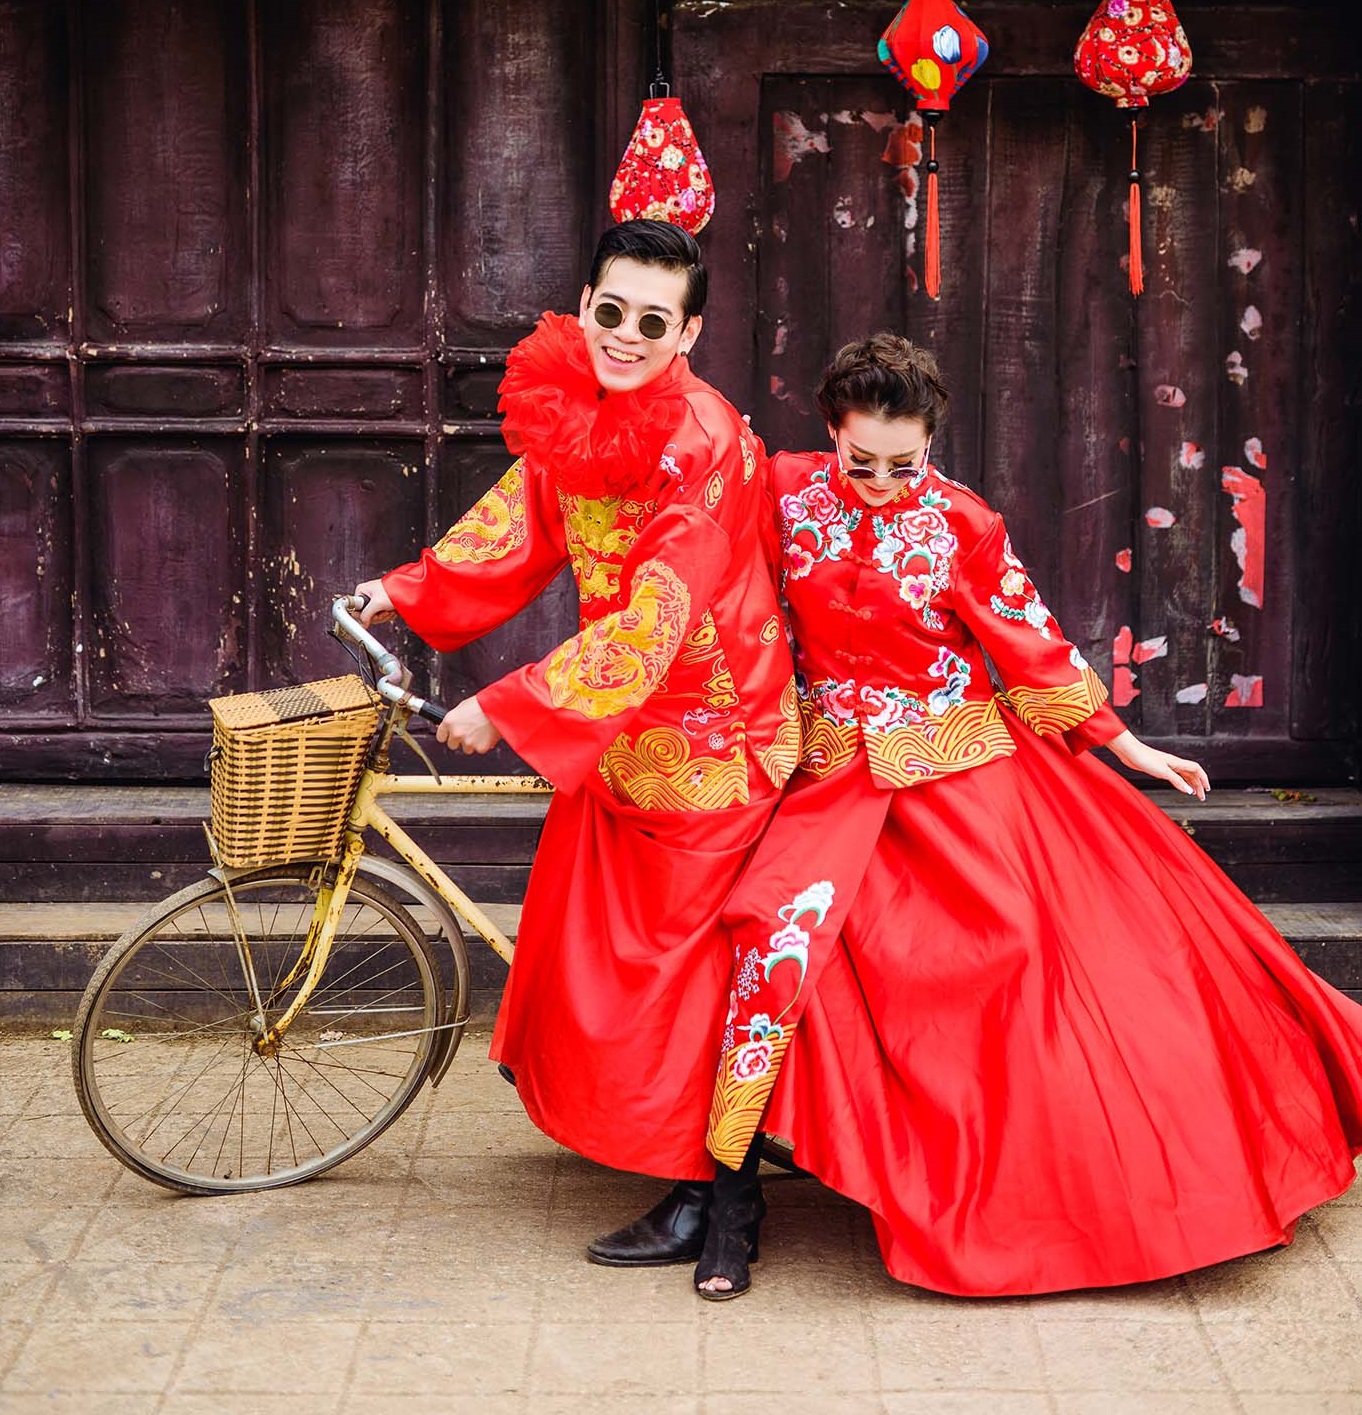 Chụp ảnh cưới kiểu Trung Quốc là sự kết hợp hoàn hảo giữa trang phục cổ truyền và phong cách hiện đại. Những bức ảnh này sẽ mang đến cho bạn cảm giác trở về quá khứ, đầy lãng mạn và ấn tượng. Hãy cùng cảm nhận vẻ đẹp độc đáo của một trong những phong cách chụp ảnh cưới được yêu thích nhất hiện nay.